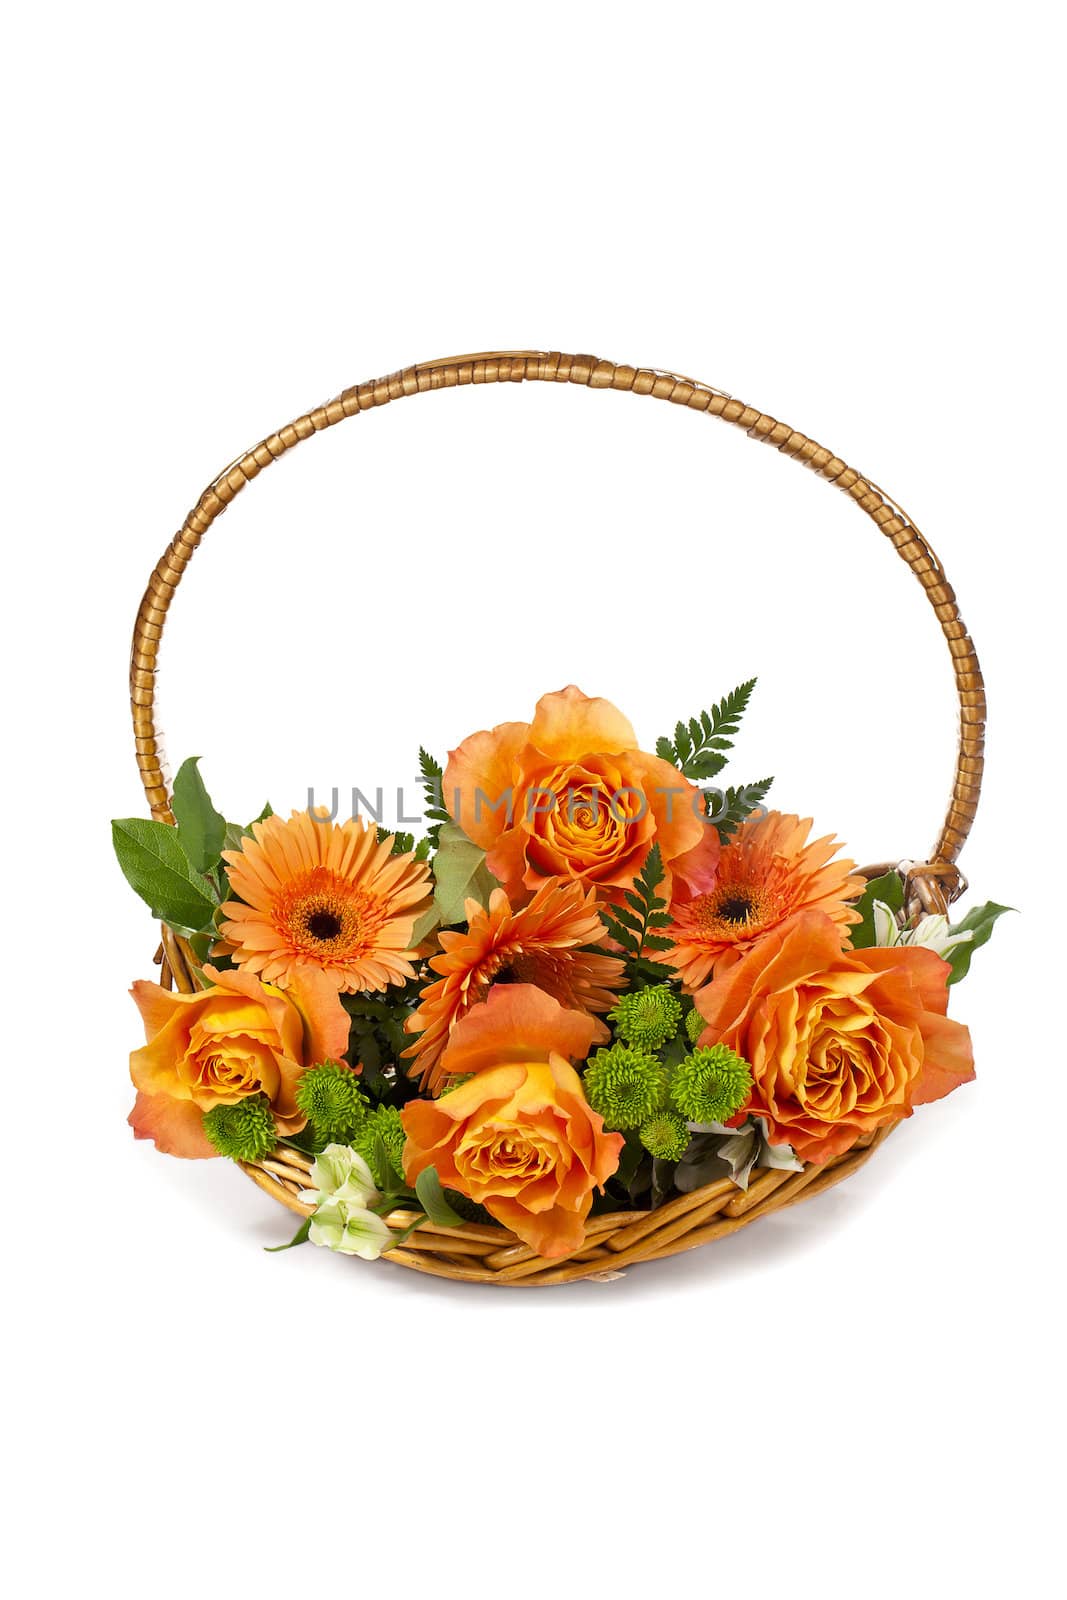 orange flowers in wicker basket by kozzi